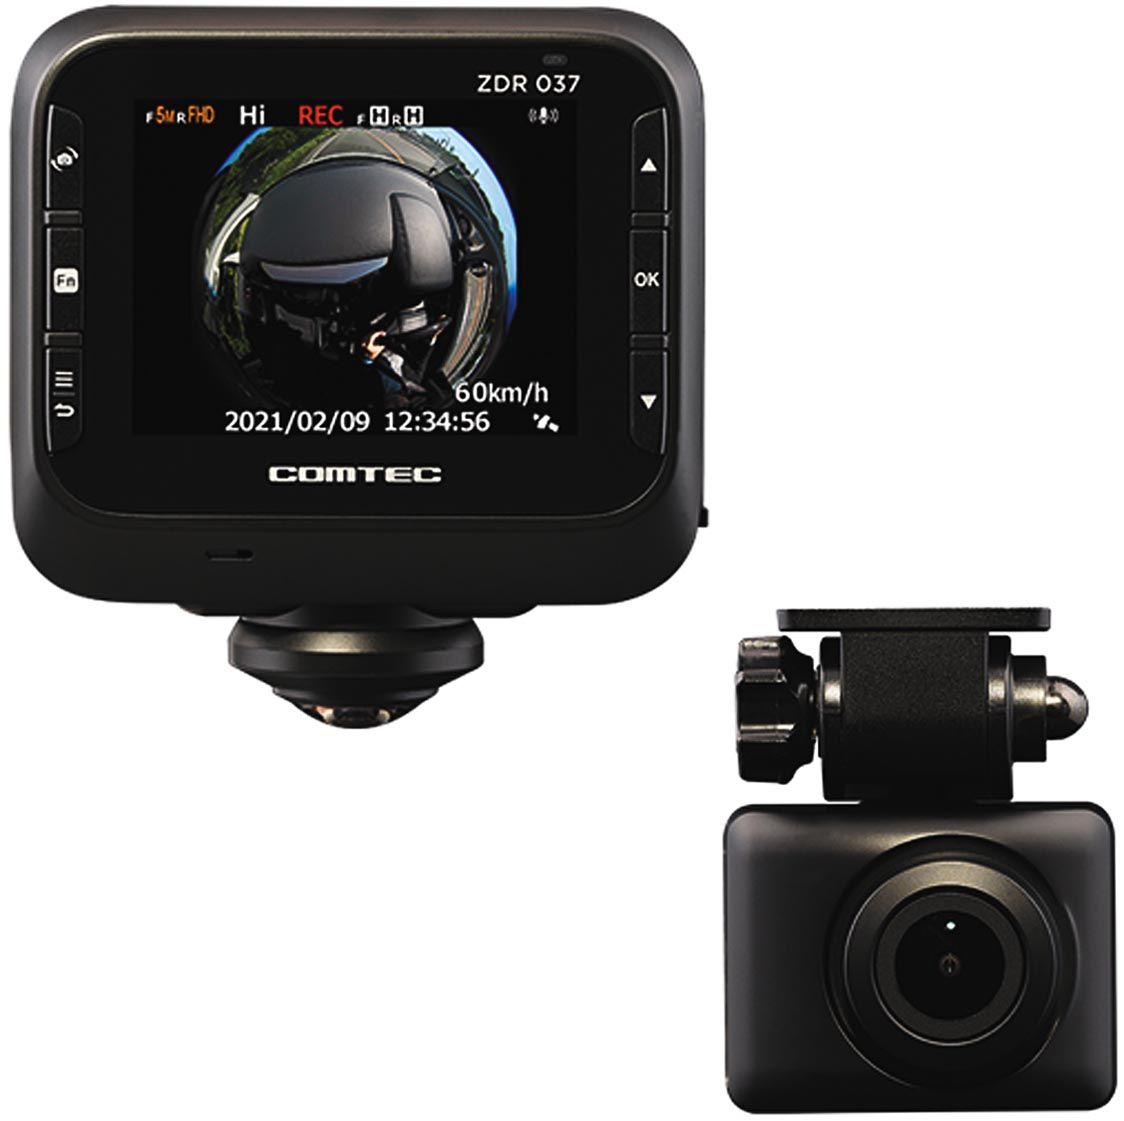 コムテック、360度カメラ用いた2カメラ型ドライブレコーダー「ZDR037 